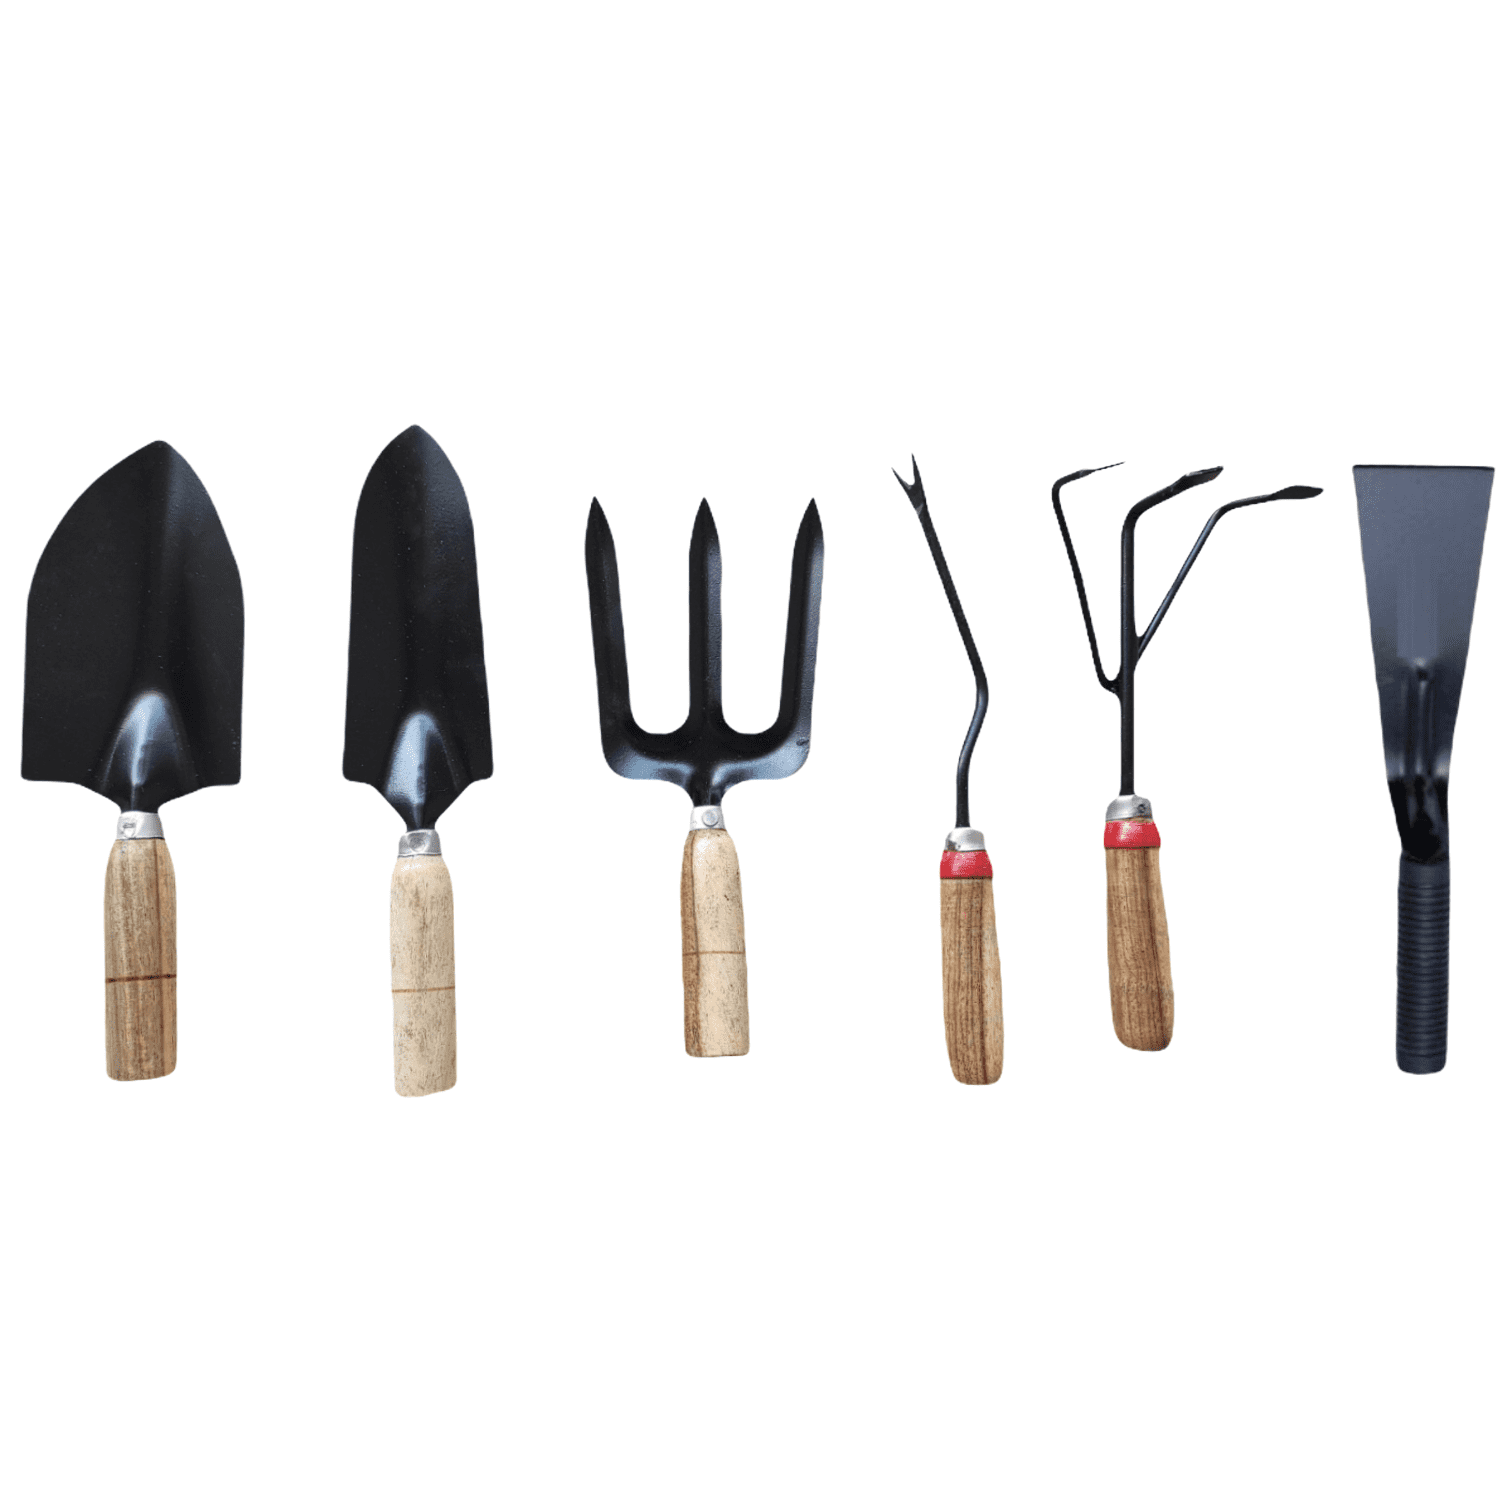 Gardening Tools - Set of 6 - Wooden Handle